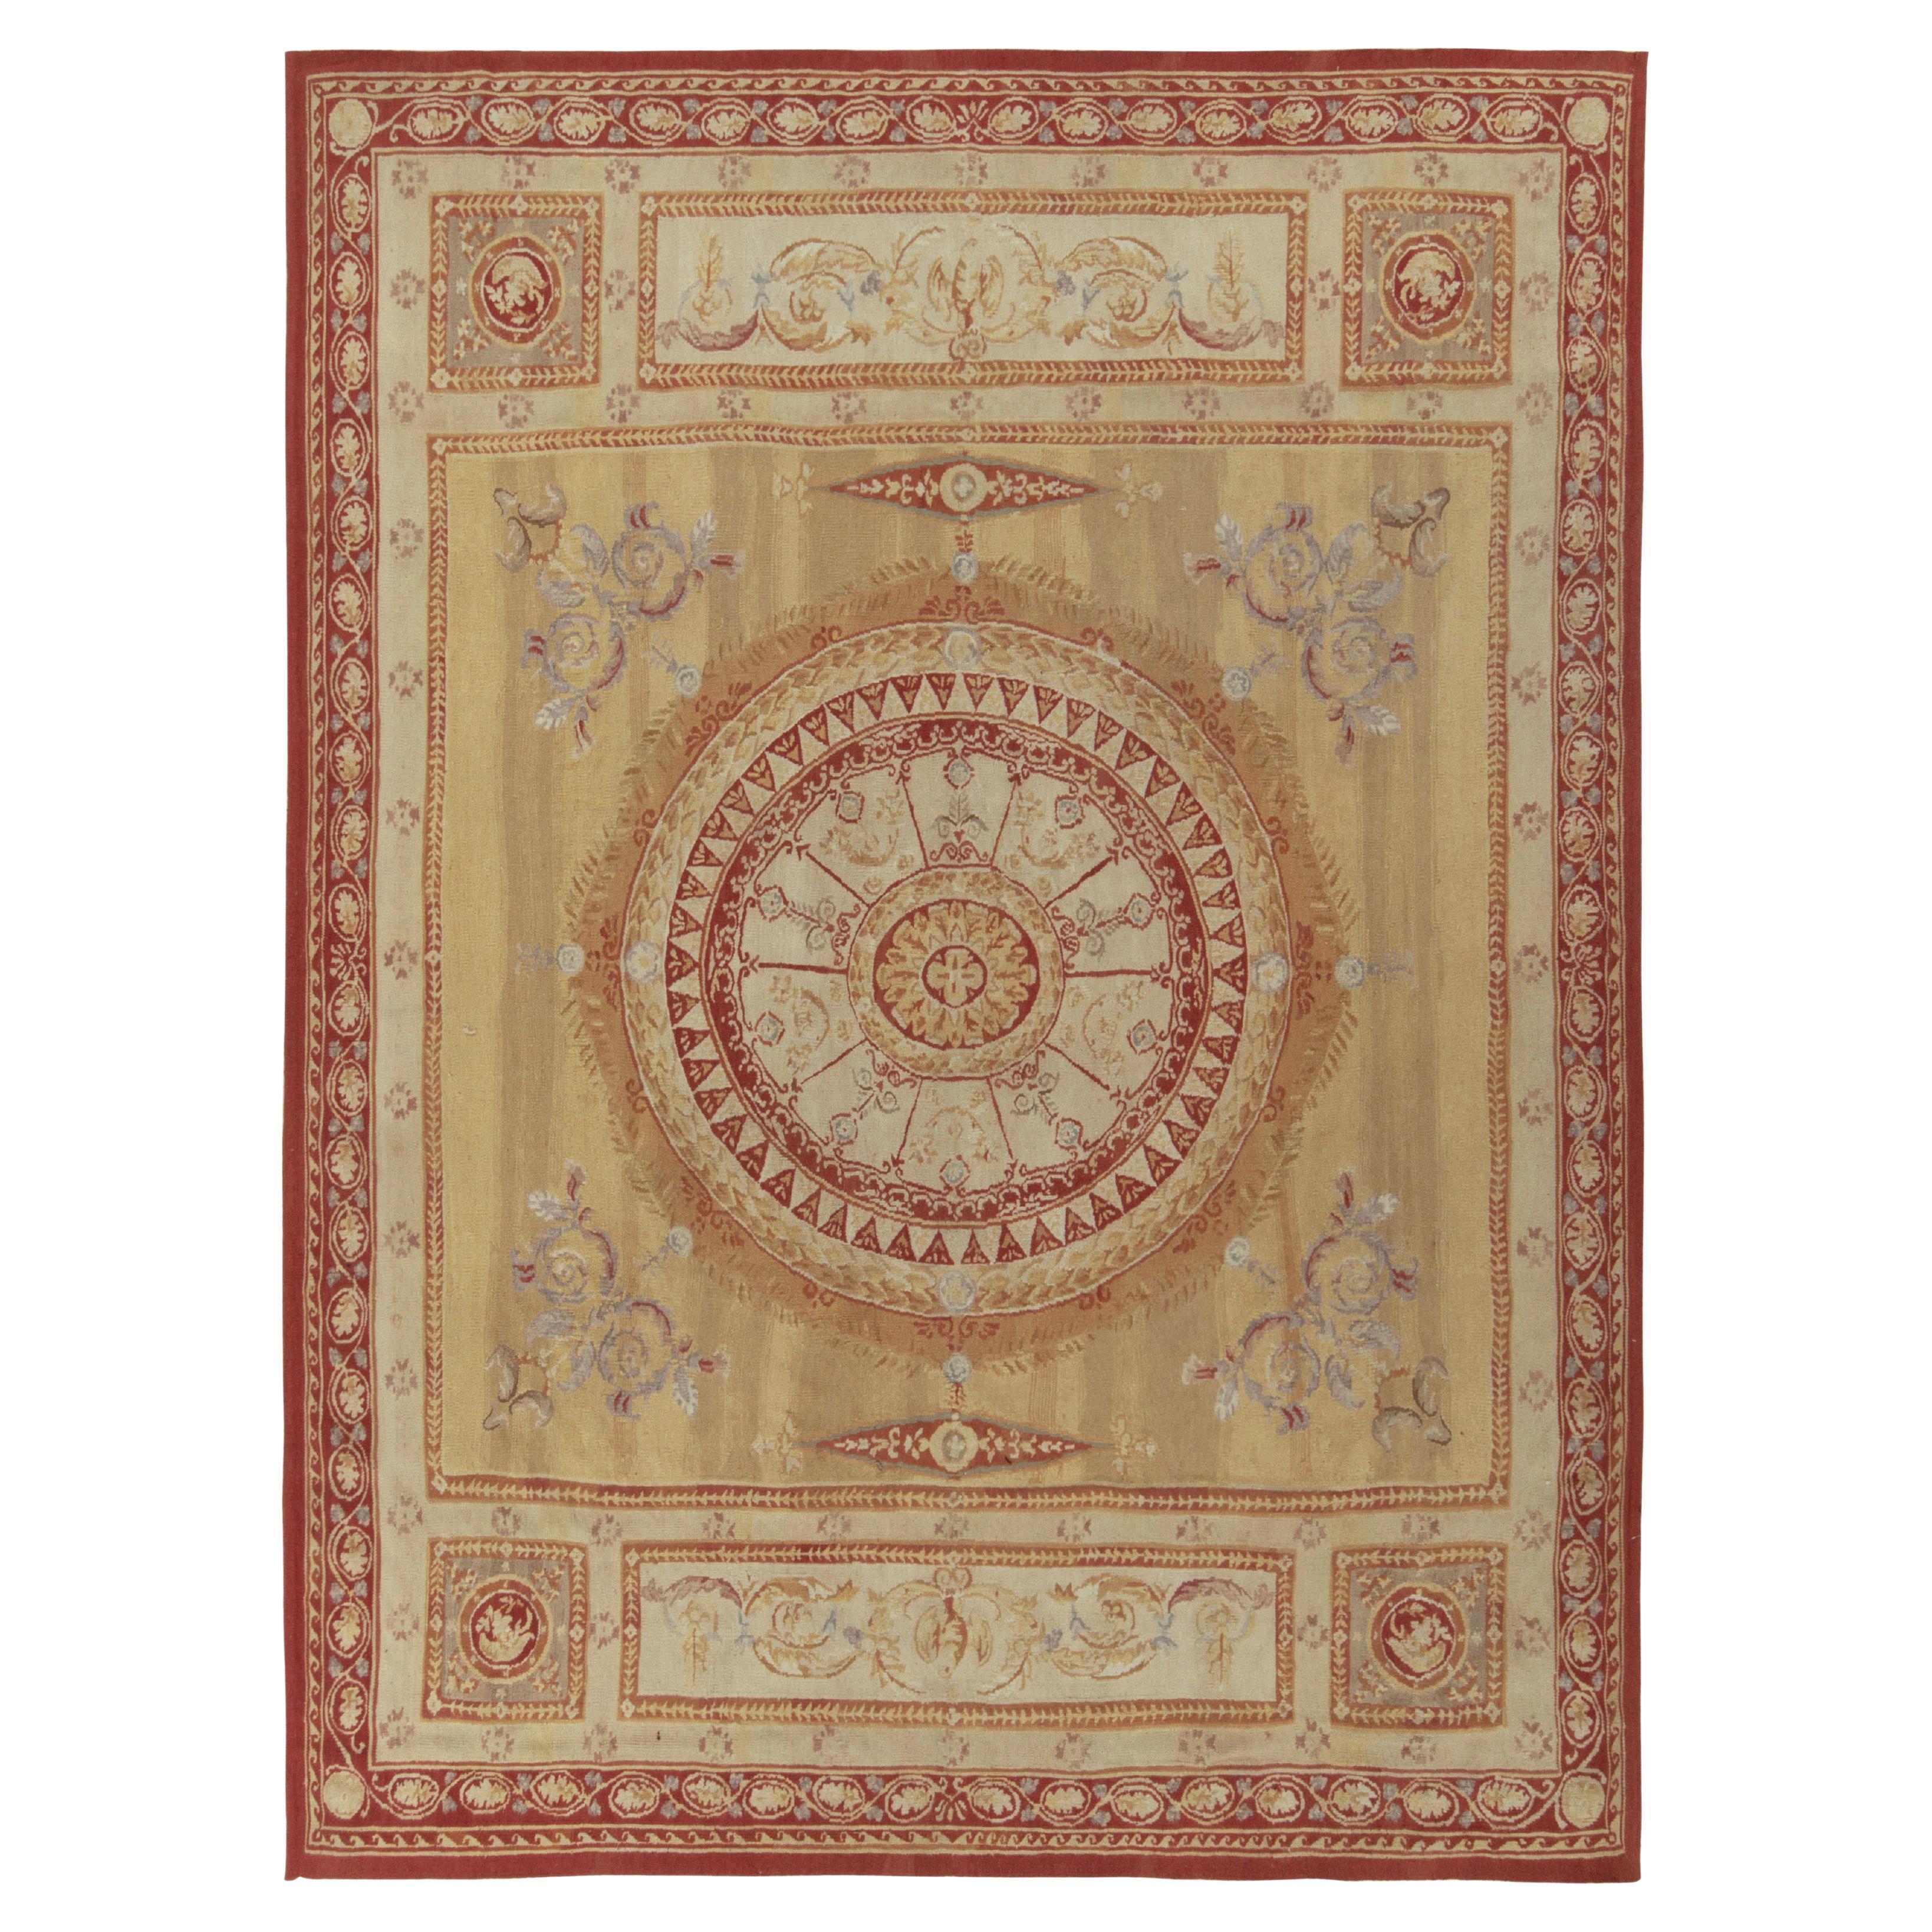 Tapis et tapis à tissage plat de style Aubusson de Kilim en médaillon à fleurs rouges, beige et marron